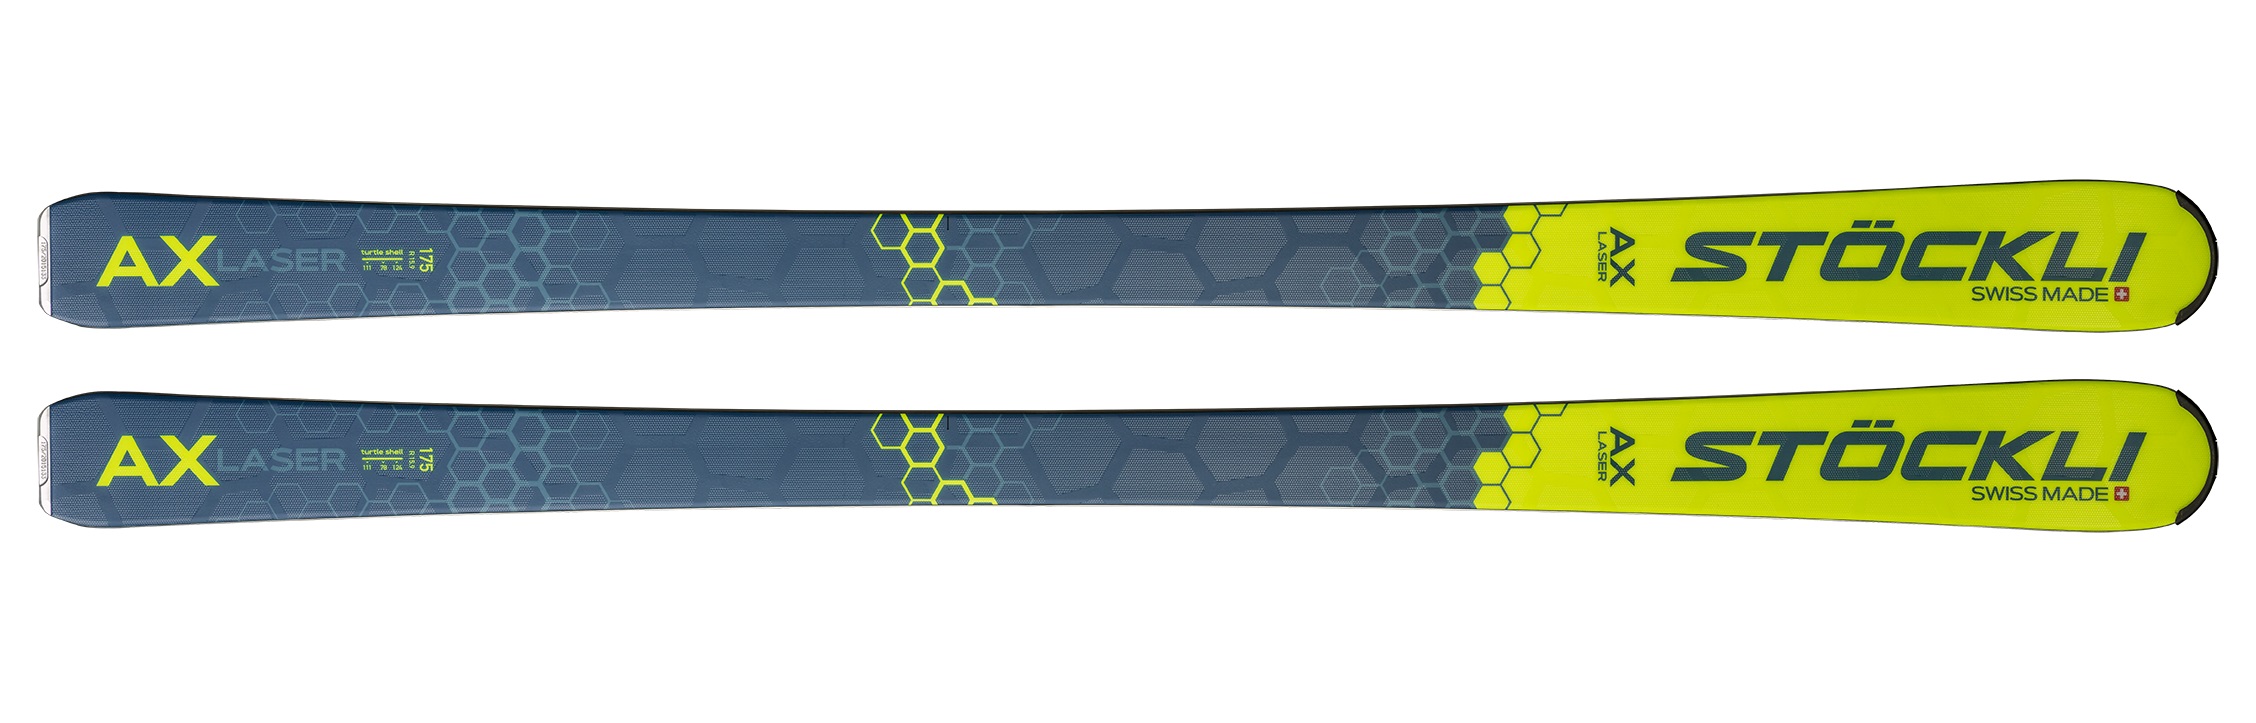 фото Горные лыжи stockli laser ax + dxm 13 2022 blue/yellow, 182 см